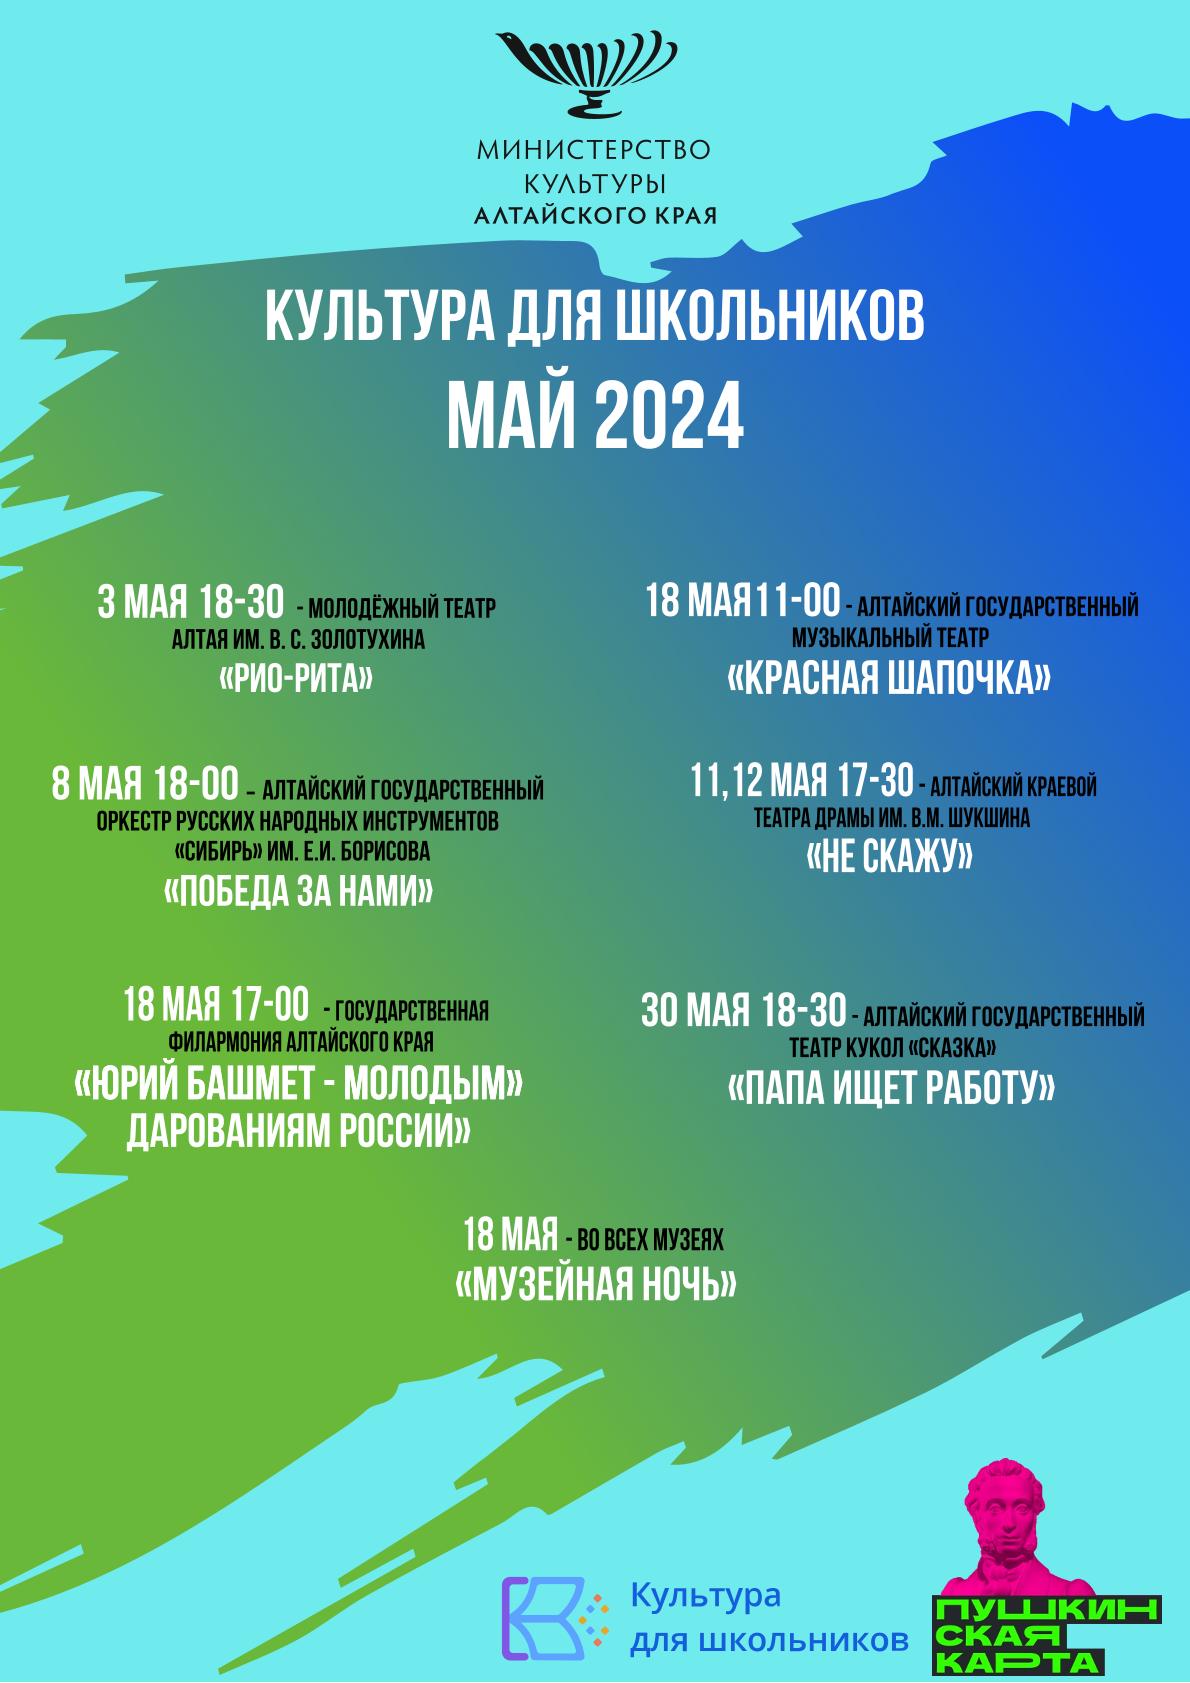 Афиша значимых культурных мероприятий на май 2024 года, рекомендуемых к посещению по Пушкинской карте..